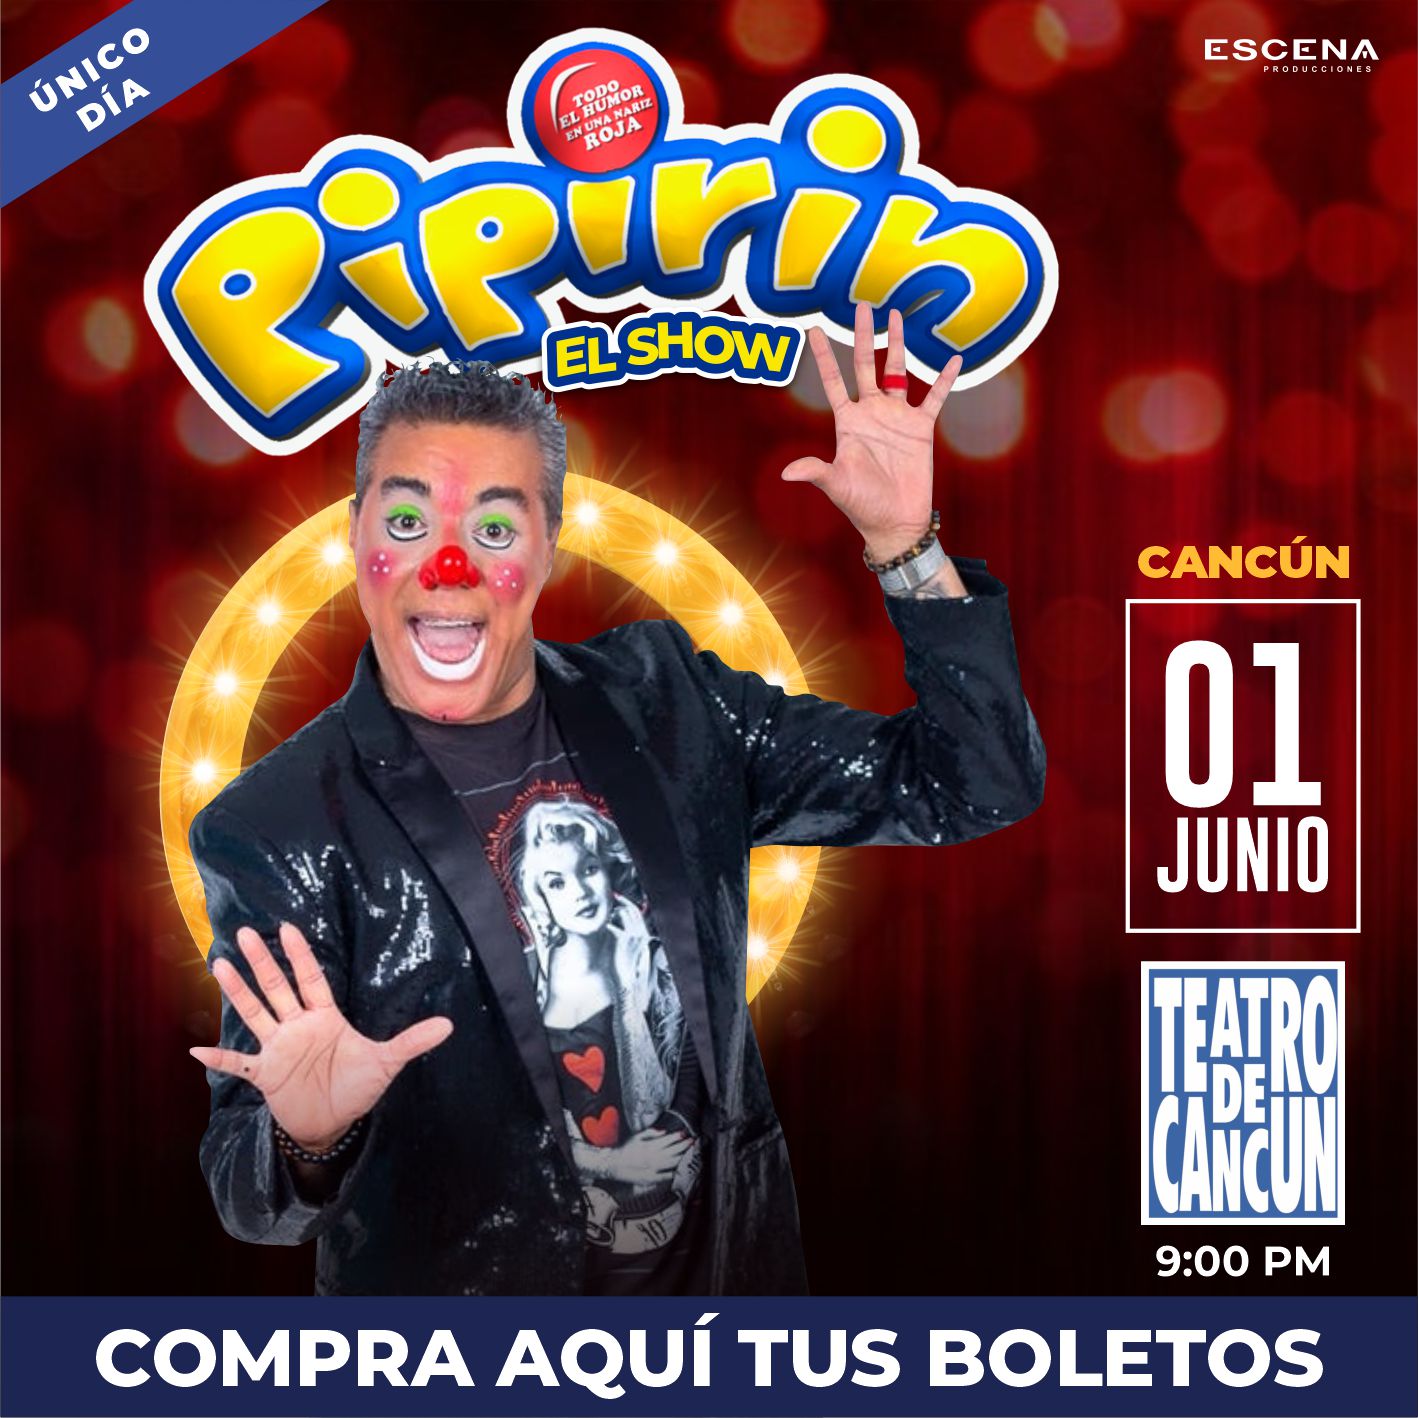 Teatro de Cancun Pipirin el ShowTeatro de Cancun